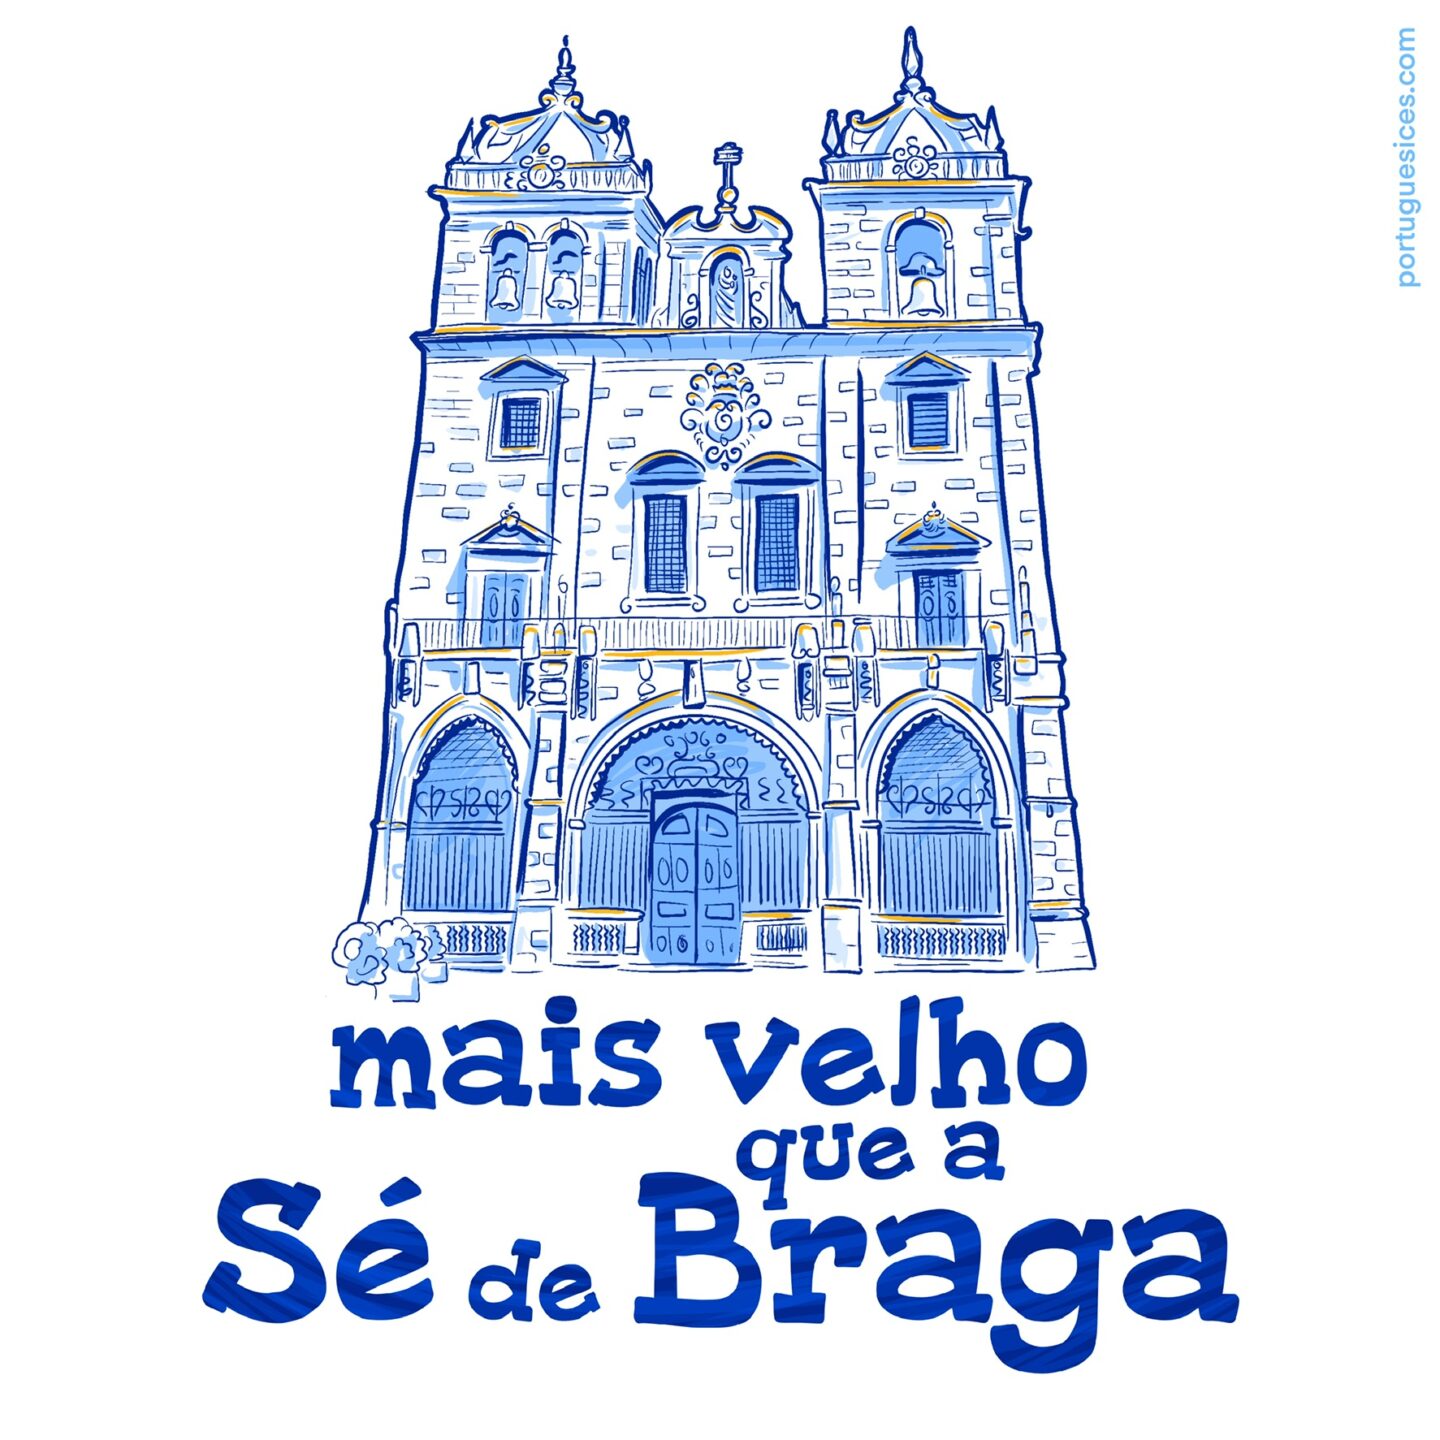 Mais velho que a Sé de Braga - Portuguesices